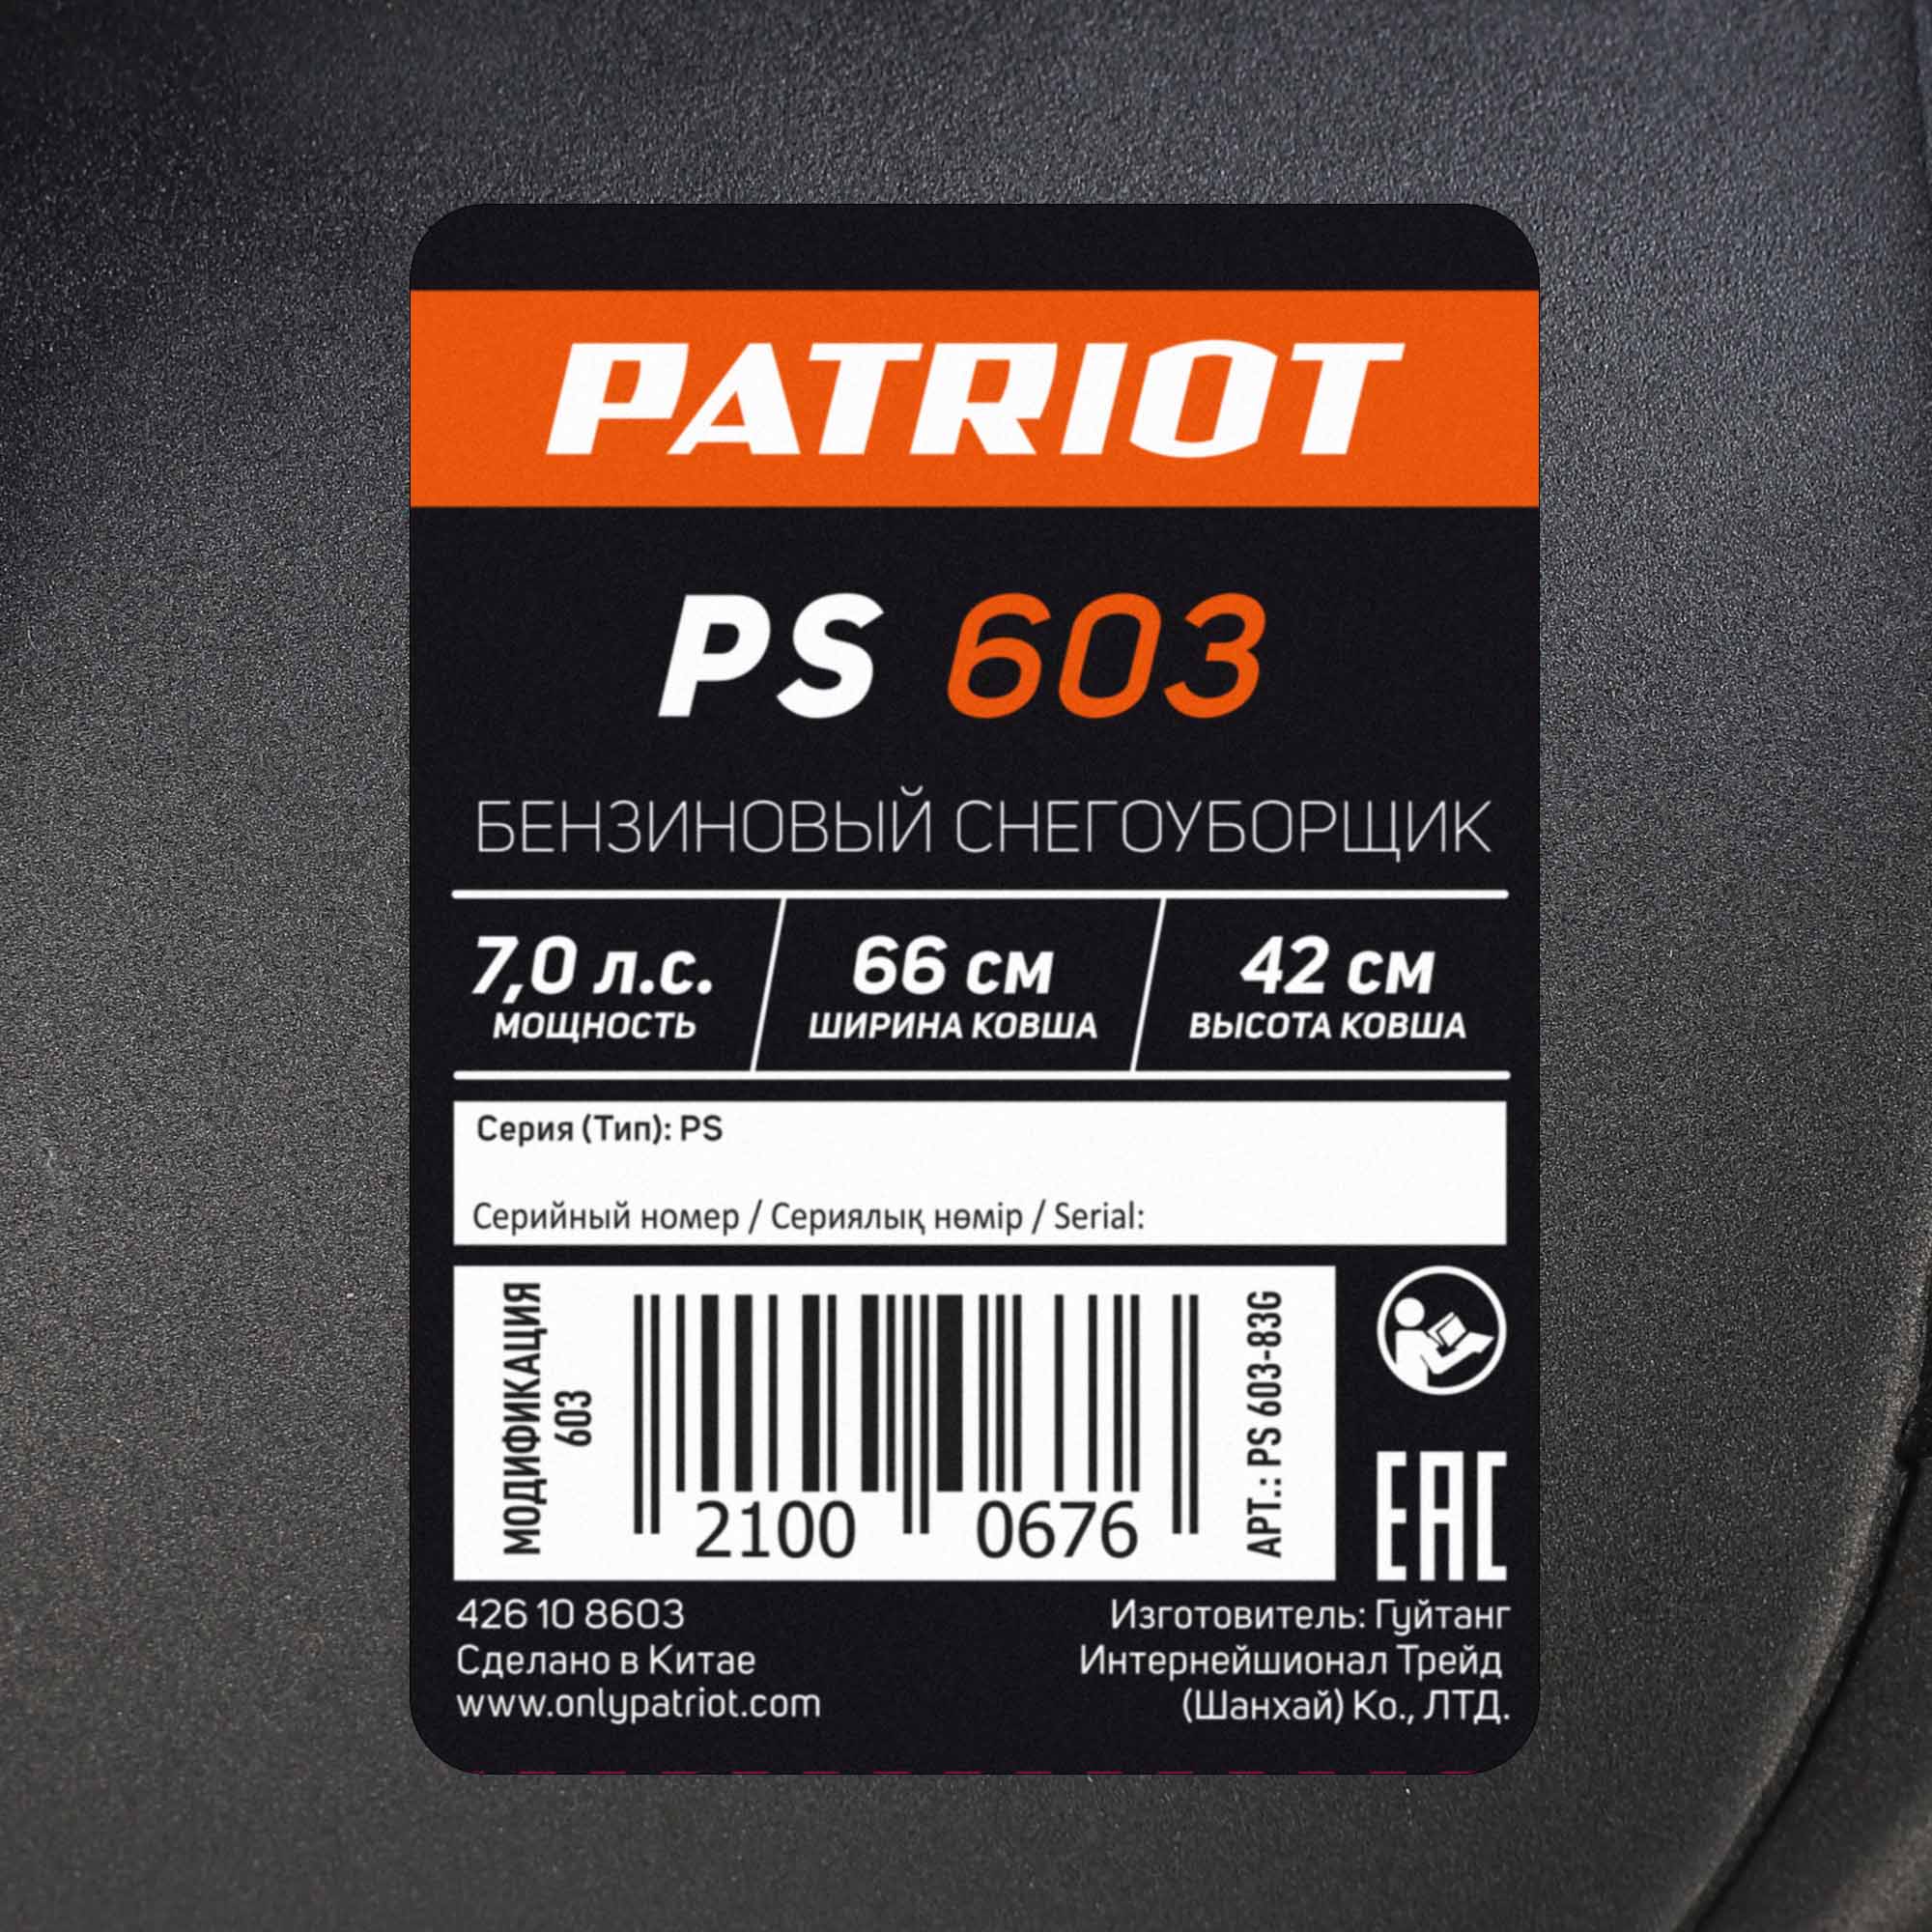 Снегоуборщик бензиновый PATRIOT PS 603 на официальном сайте